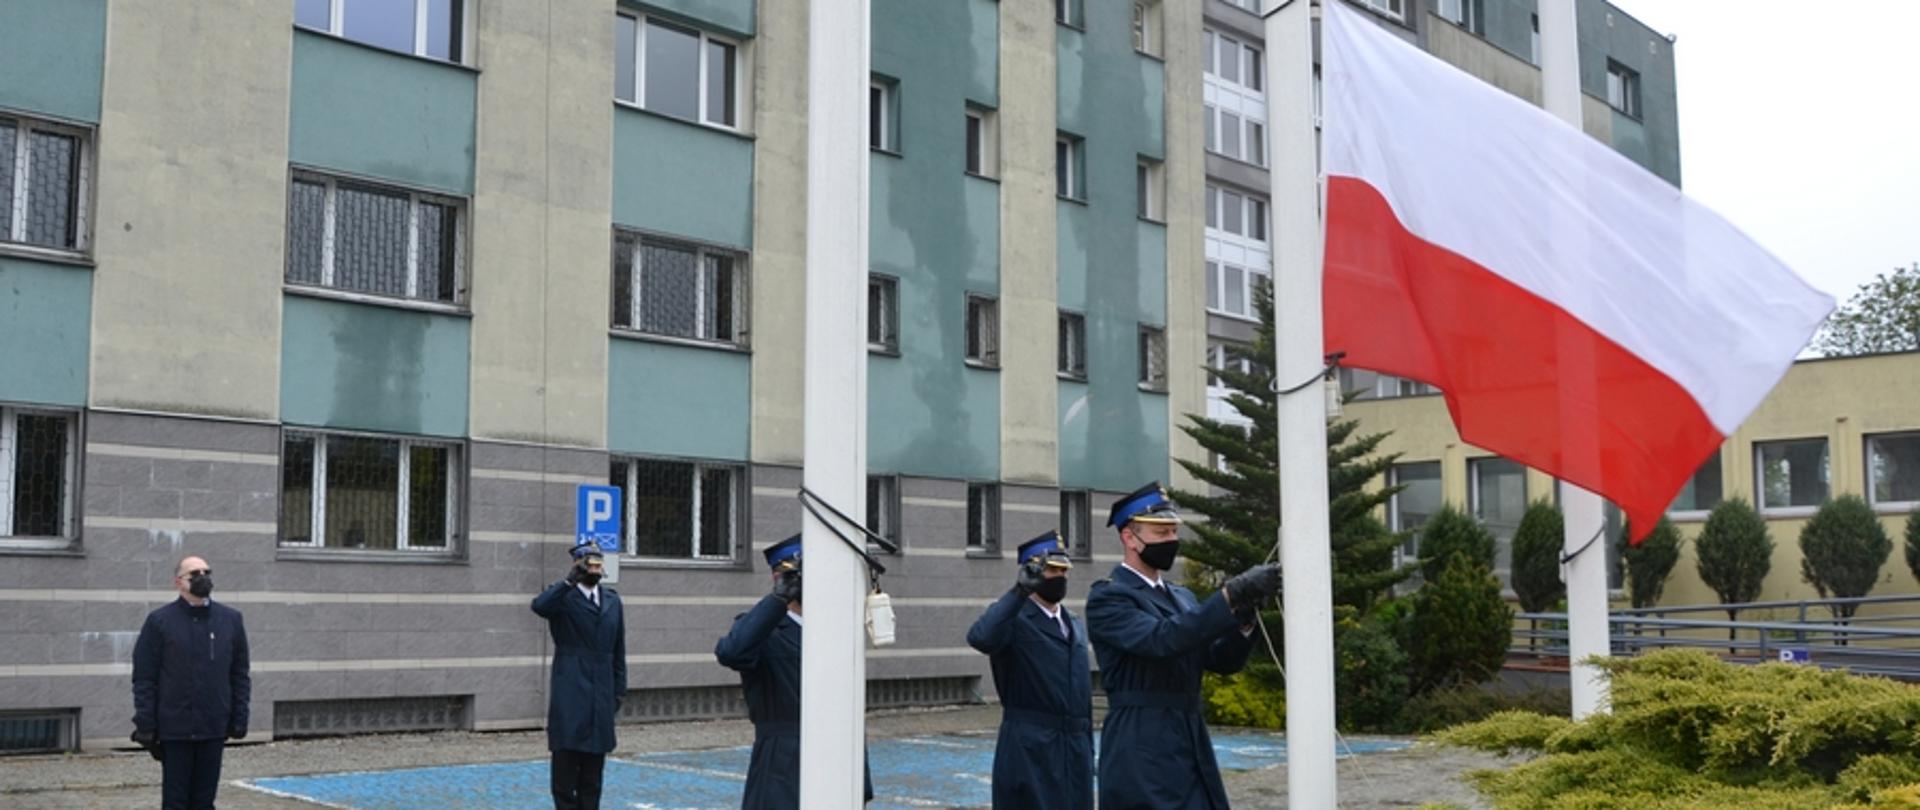 Na zdjęciu widać strażaków w mundurach wyjściowych, którzy w uroczysty sposób podnoszą na maszt flagę państwową z okazji Dnia Flagi Rzeczypospolitej Polskiej. W tle budynek starostwa powiatowego